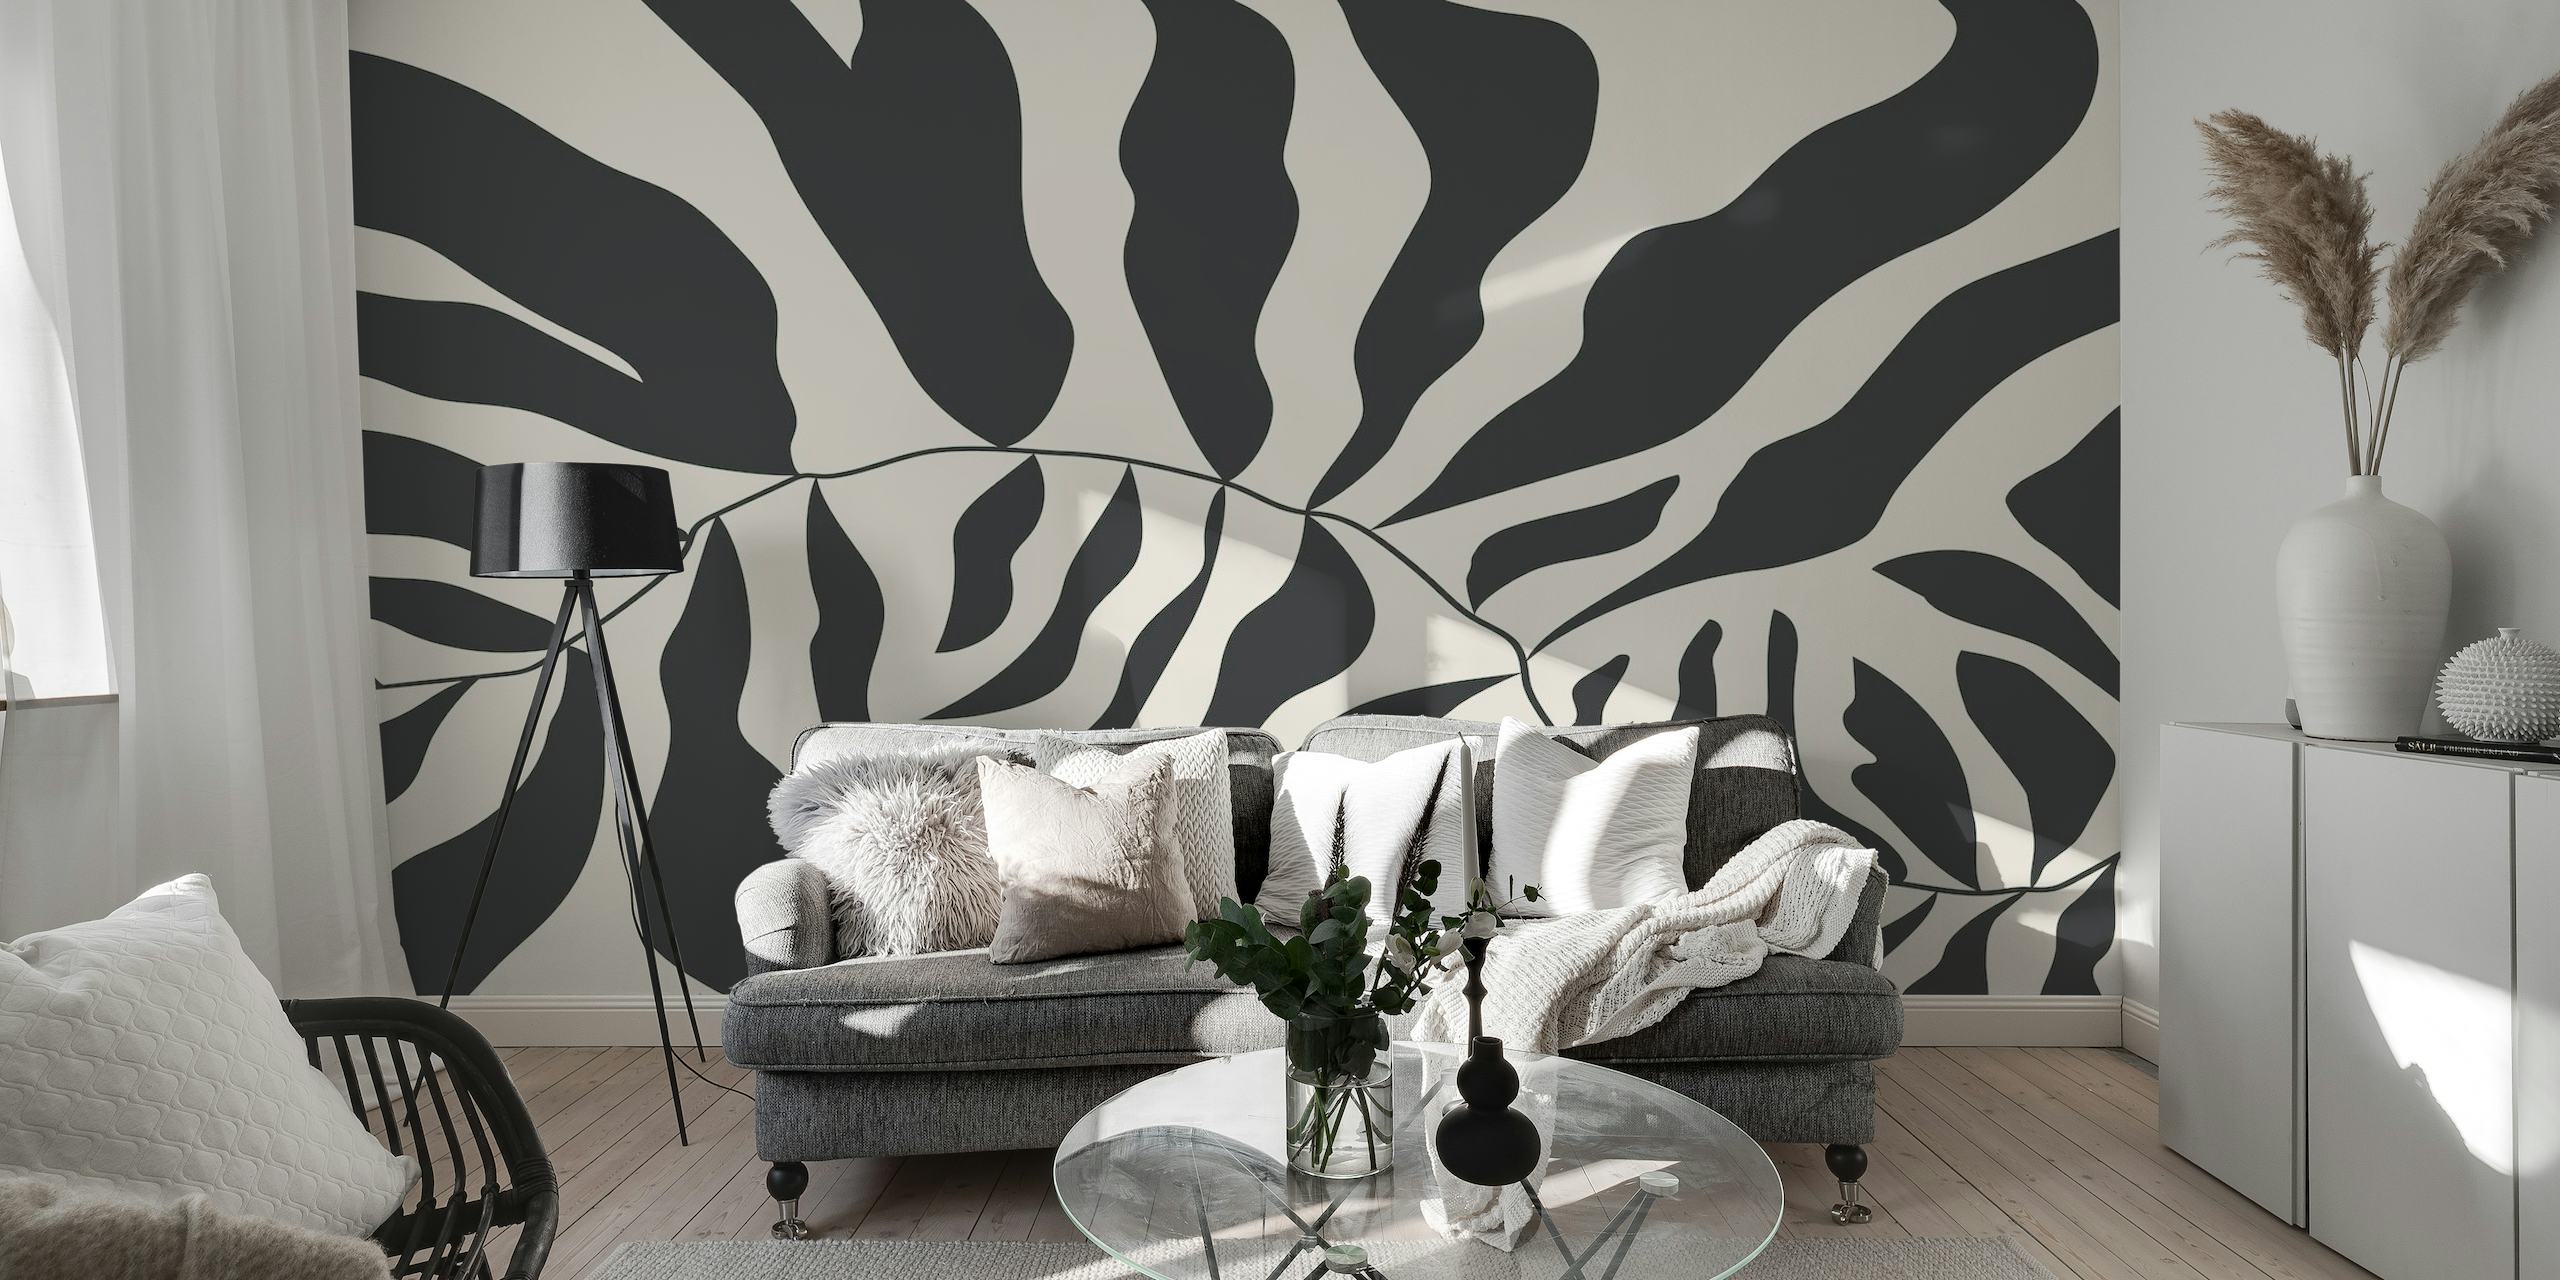 Schwarz-weißes, abstraktes Wandgemälde im Matisse-Stil mit organischen Formen